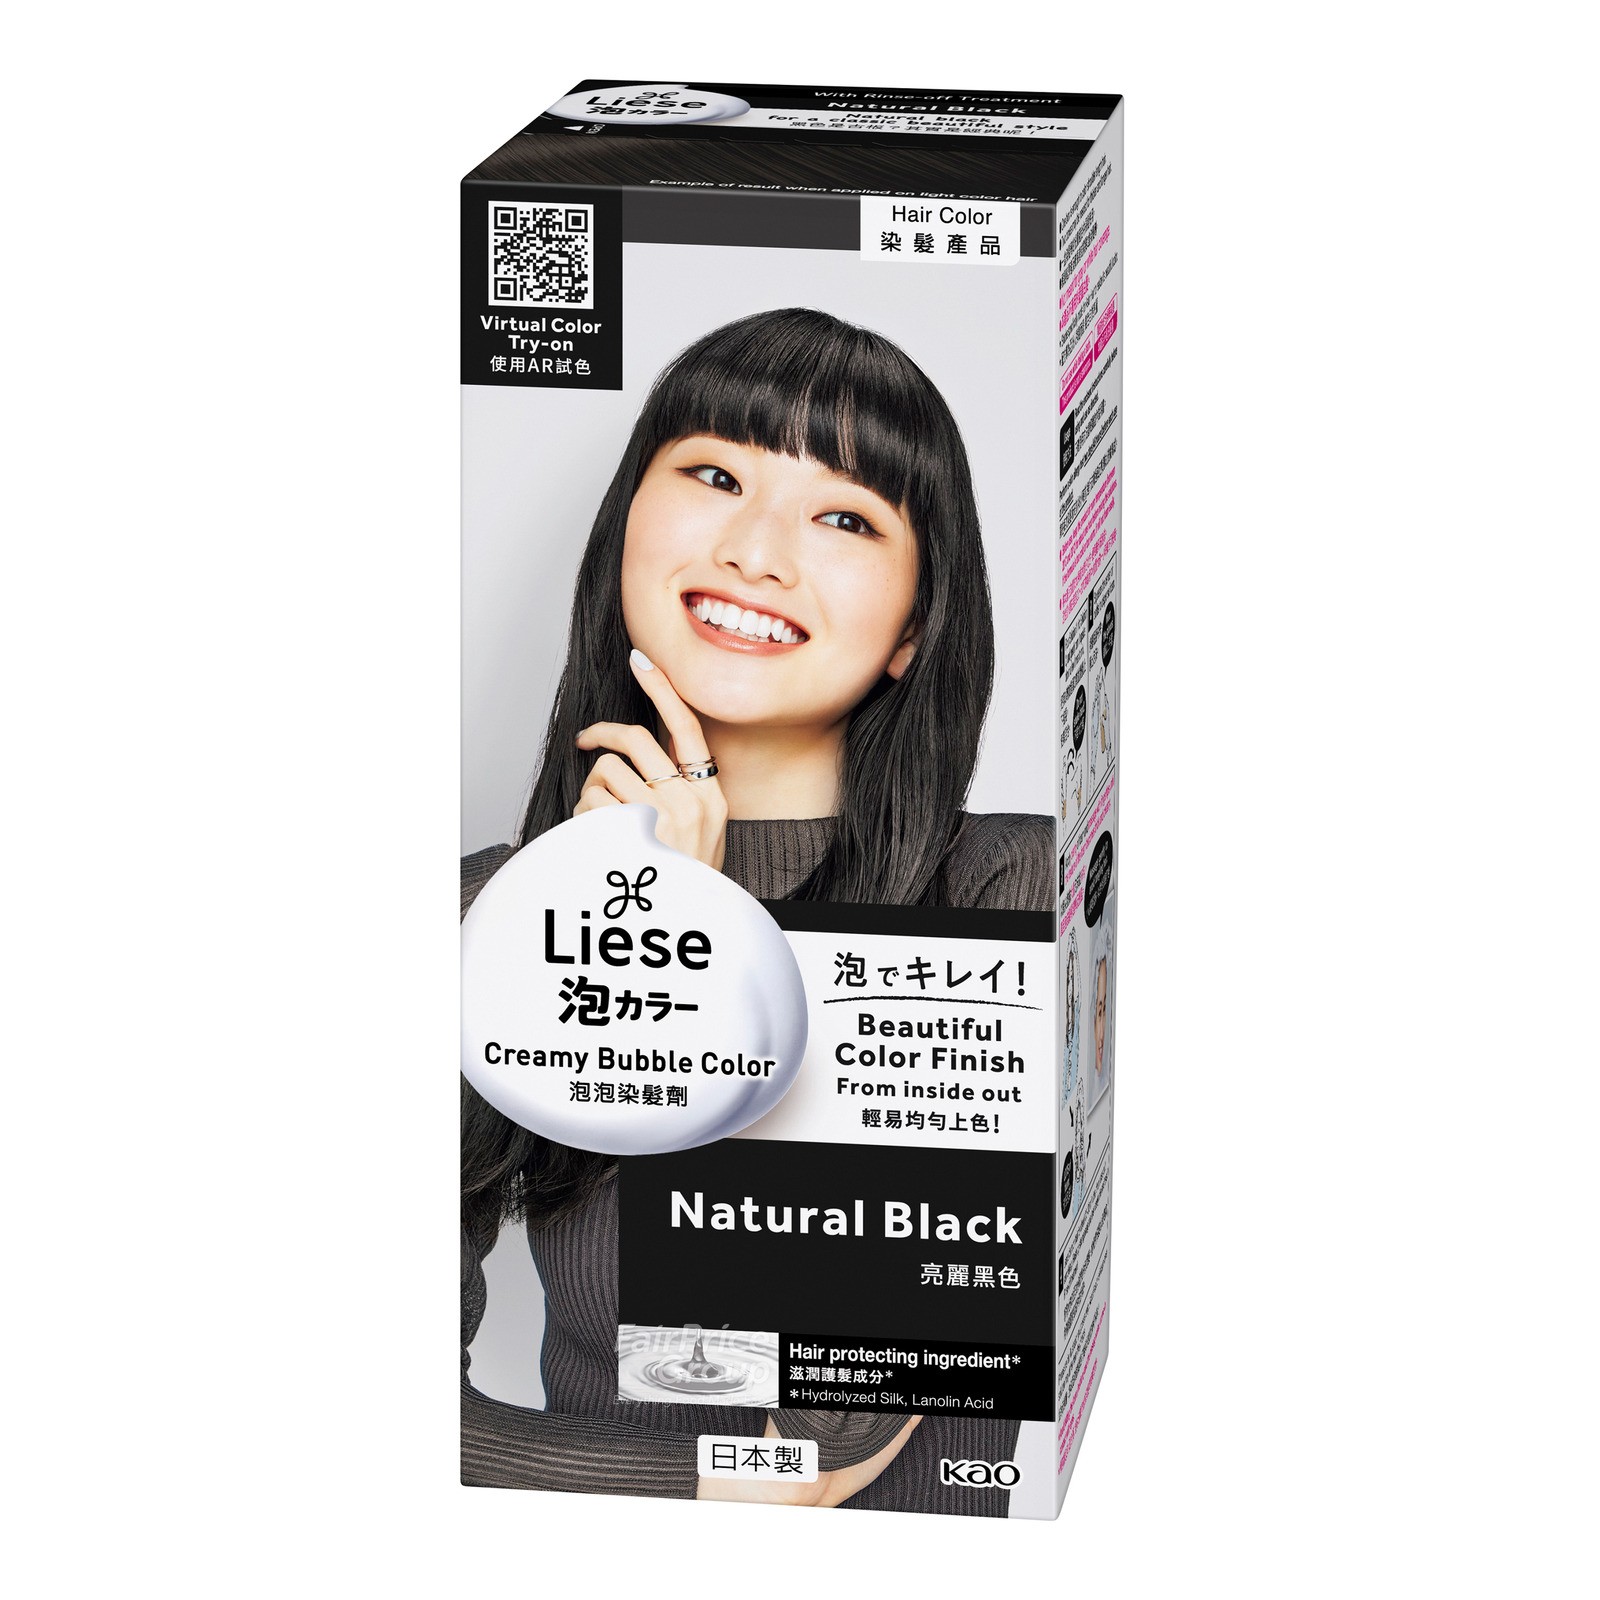 kao-liese-natural-plant-foam-hair-dye-w22-restore-black